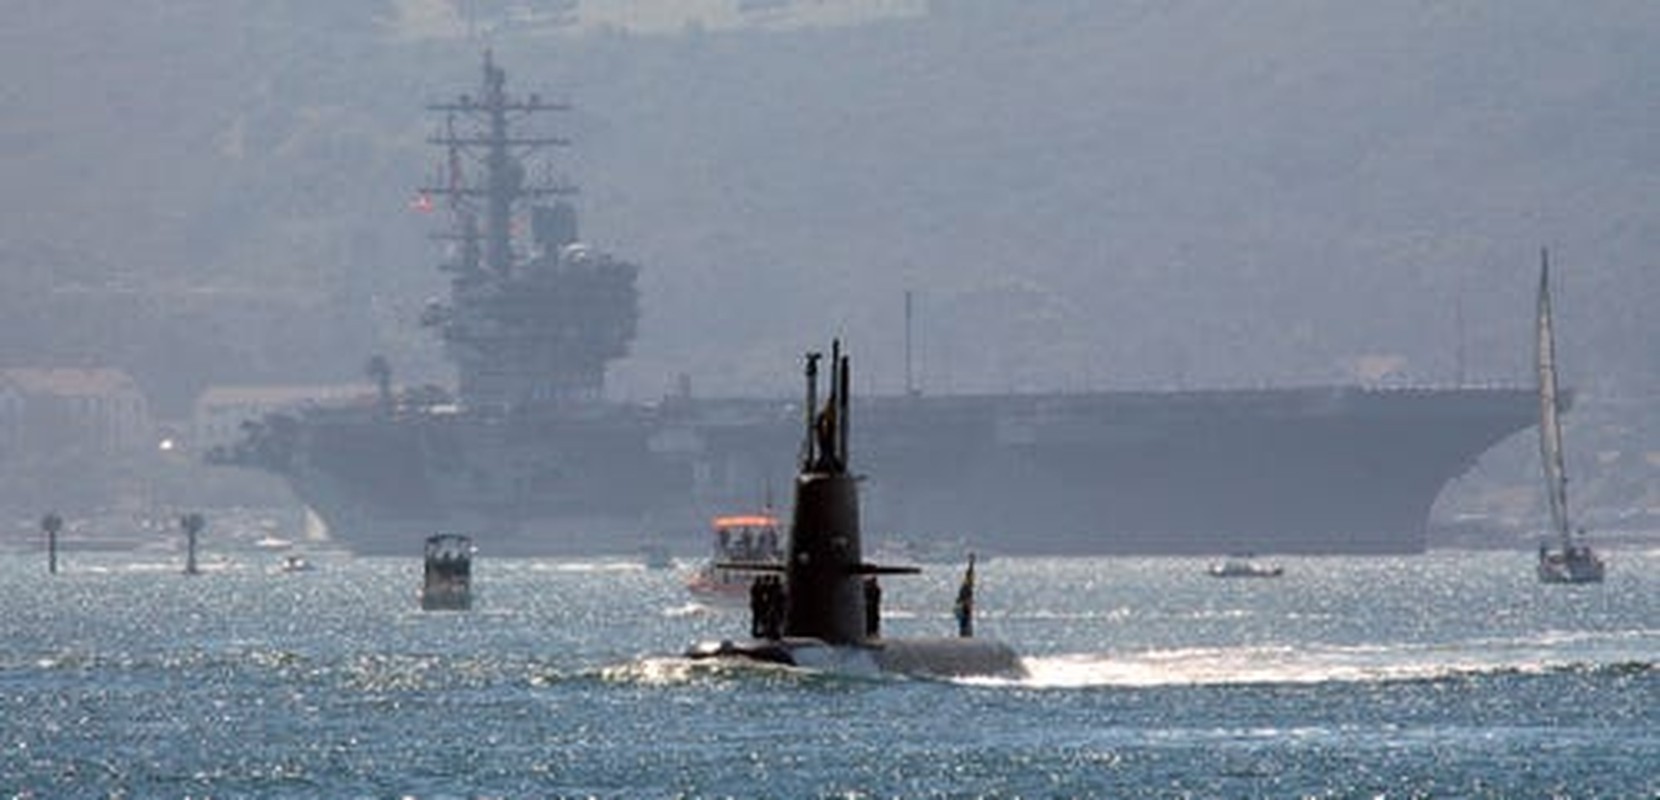 View - 	Loạt tàu chiến hùng hậu trong đội hình tàu sân bay Hải quân Mỹ